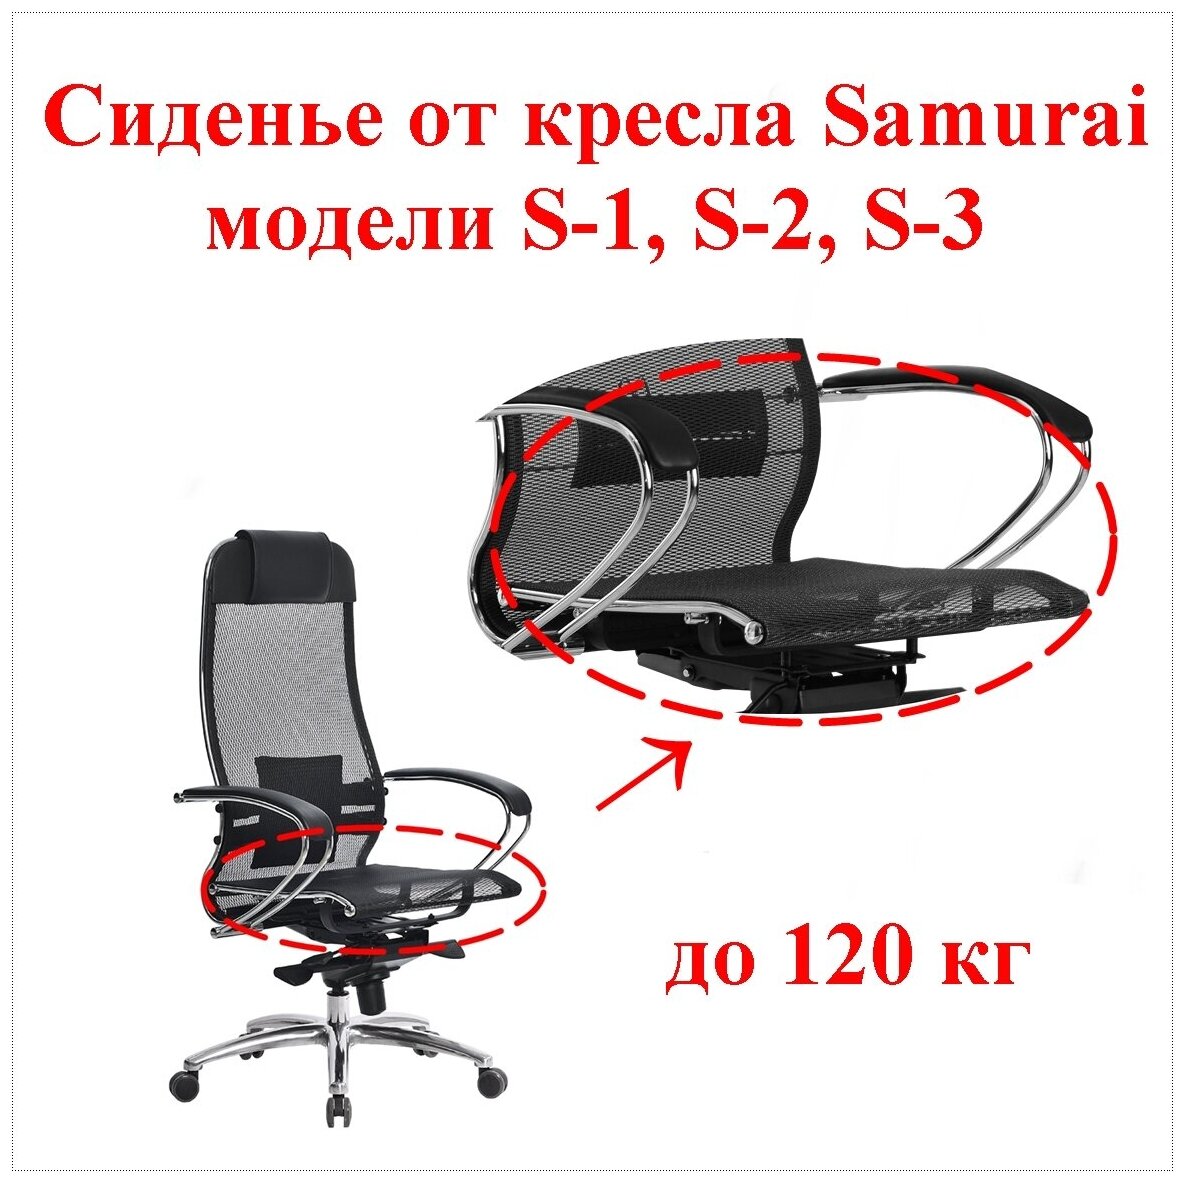 Сиденье штатное для кресла Samurai Метта. Применяемость: модели S-1 S-2 S-3. Материал: сетчатая ткань цвет чёрный. Нагрузка до 120 кг.